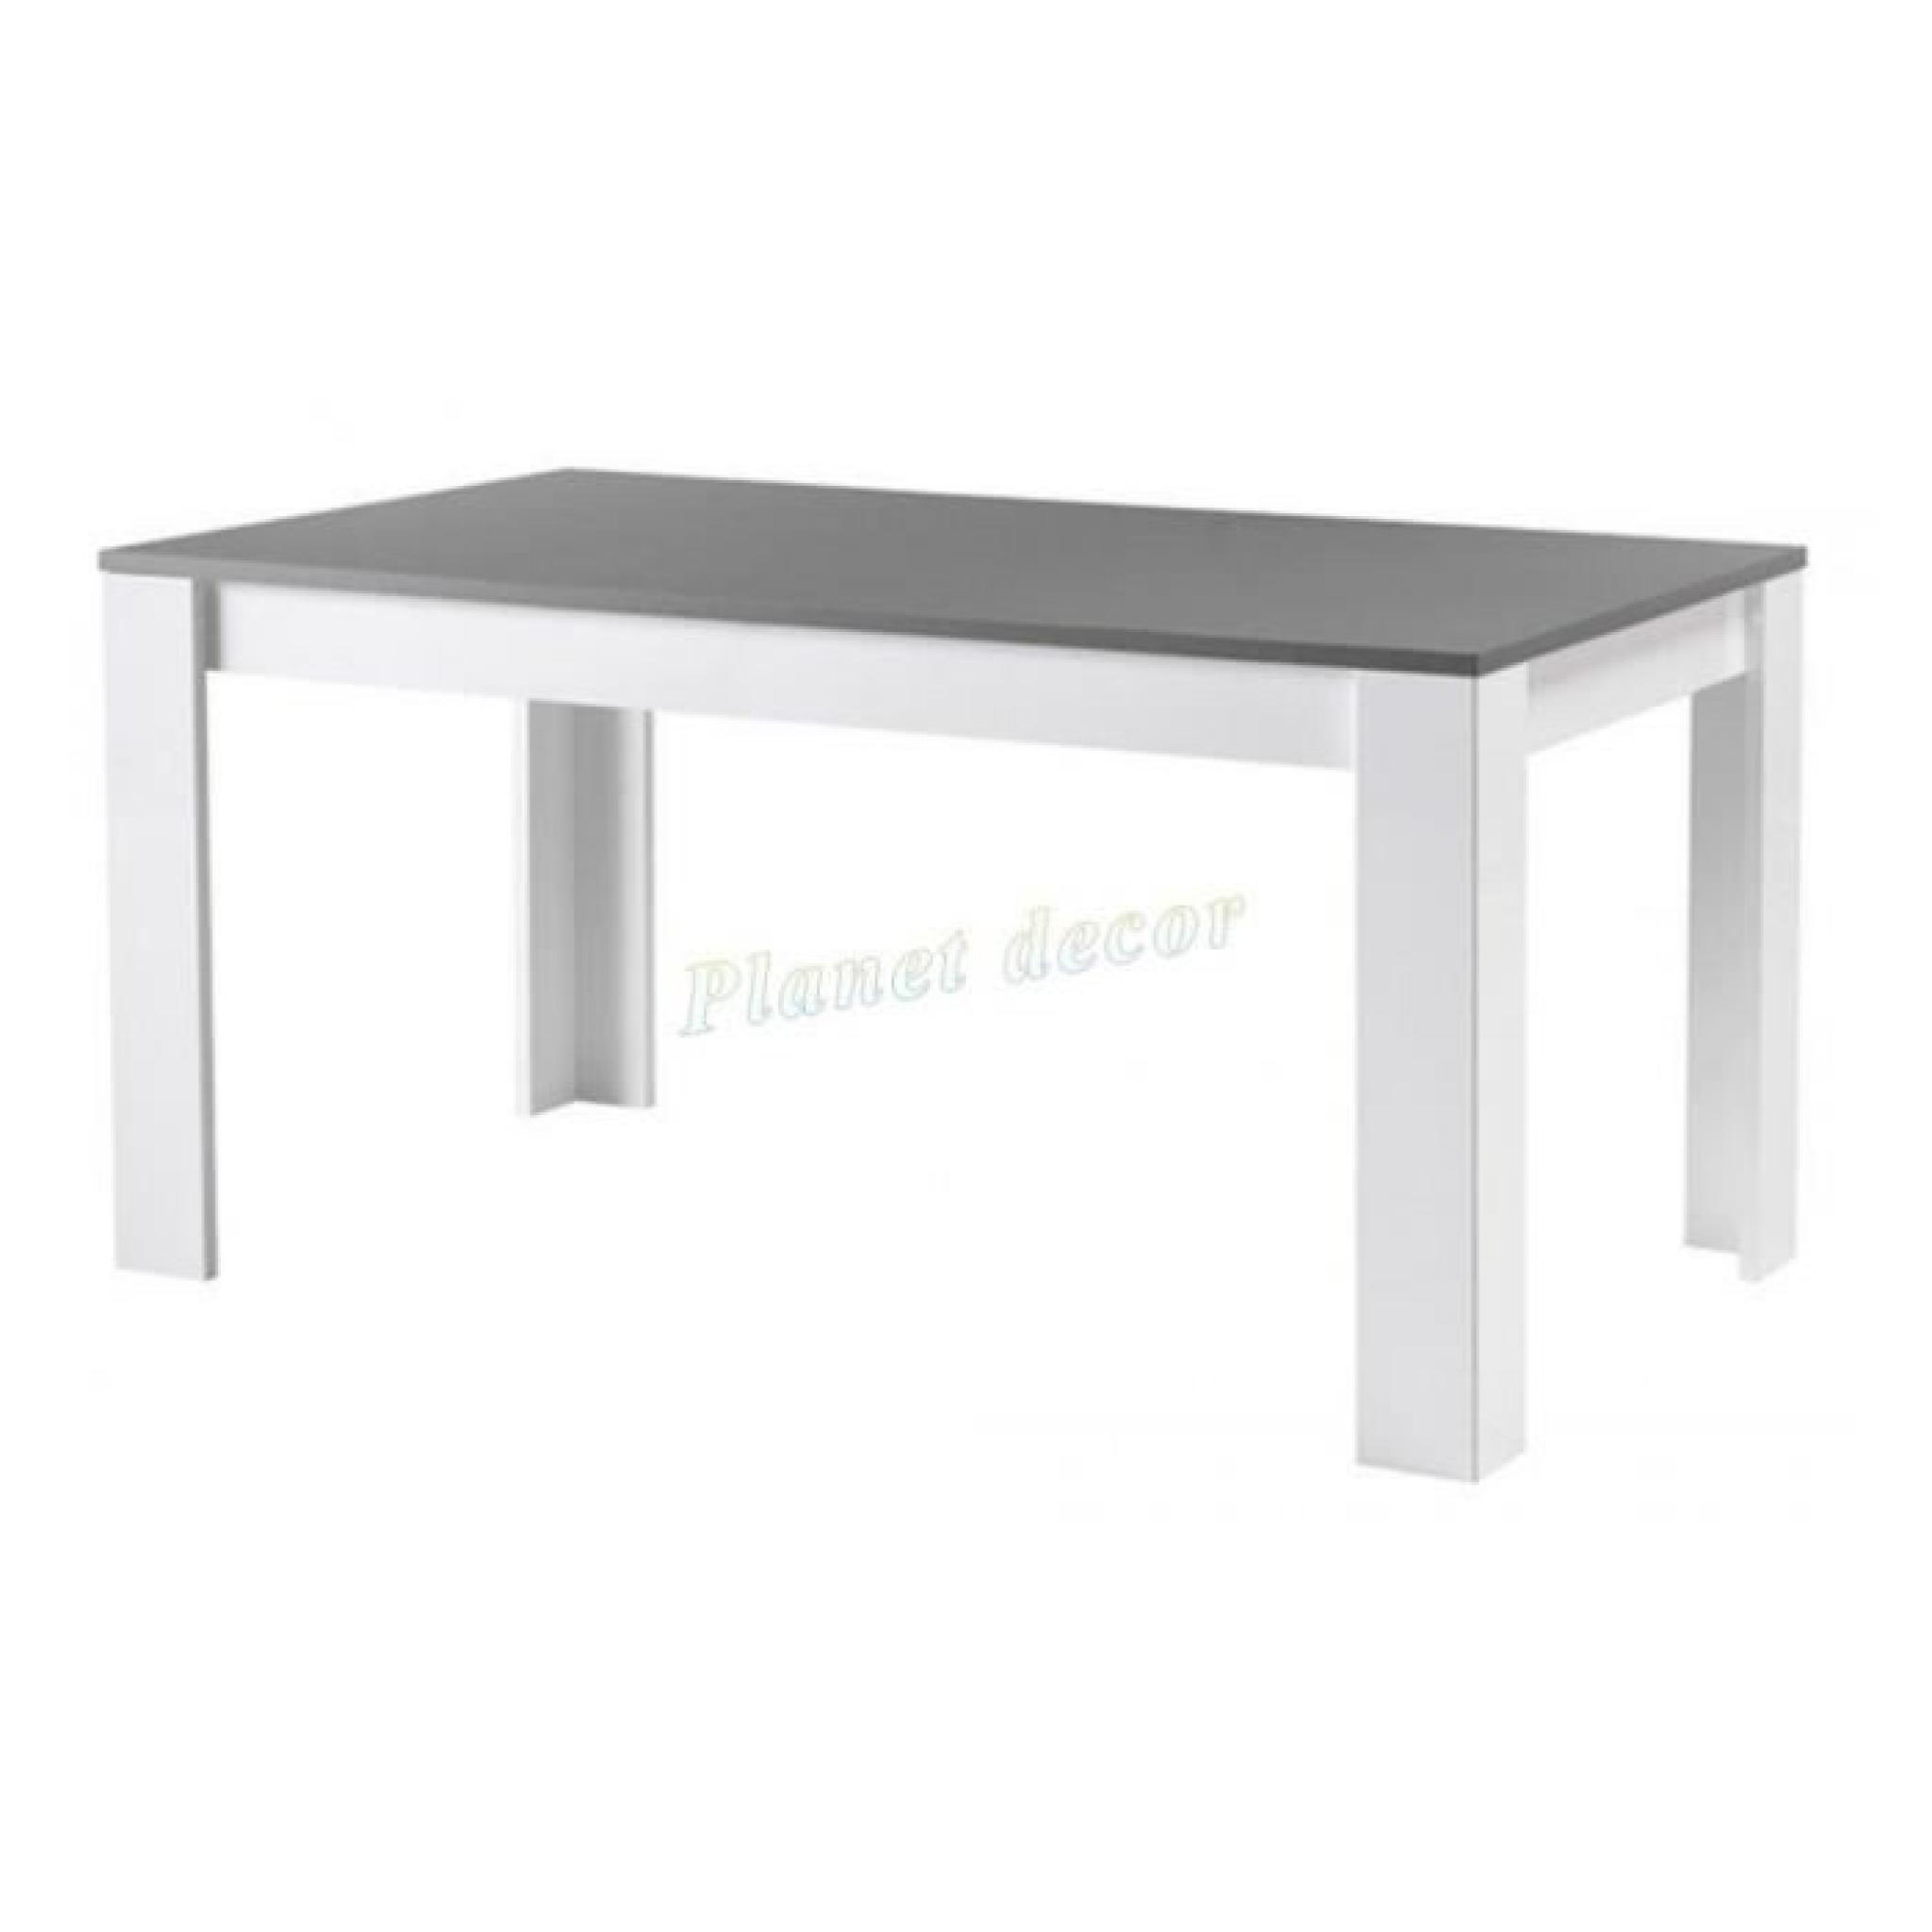 TABLE DE REPAS MODENA LAQUEE BLANC-GRIS L190cm (sans chaises)